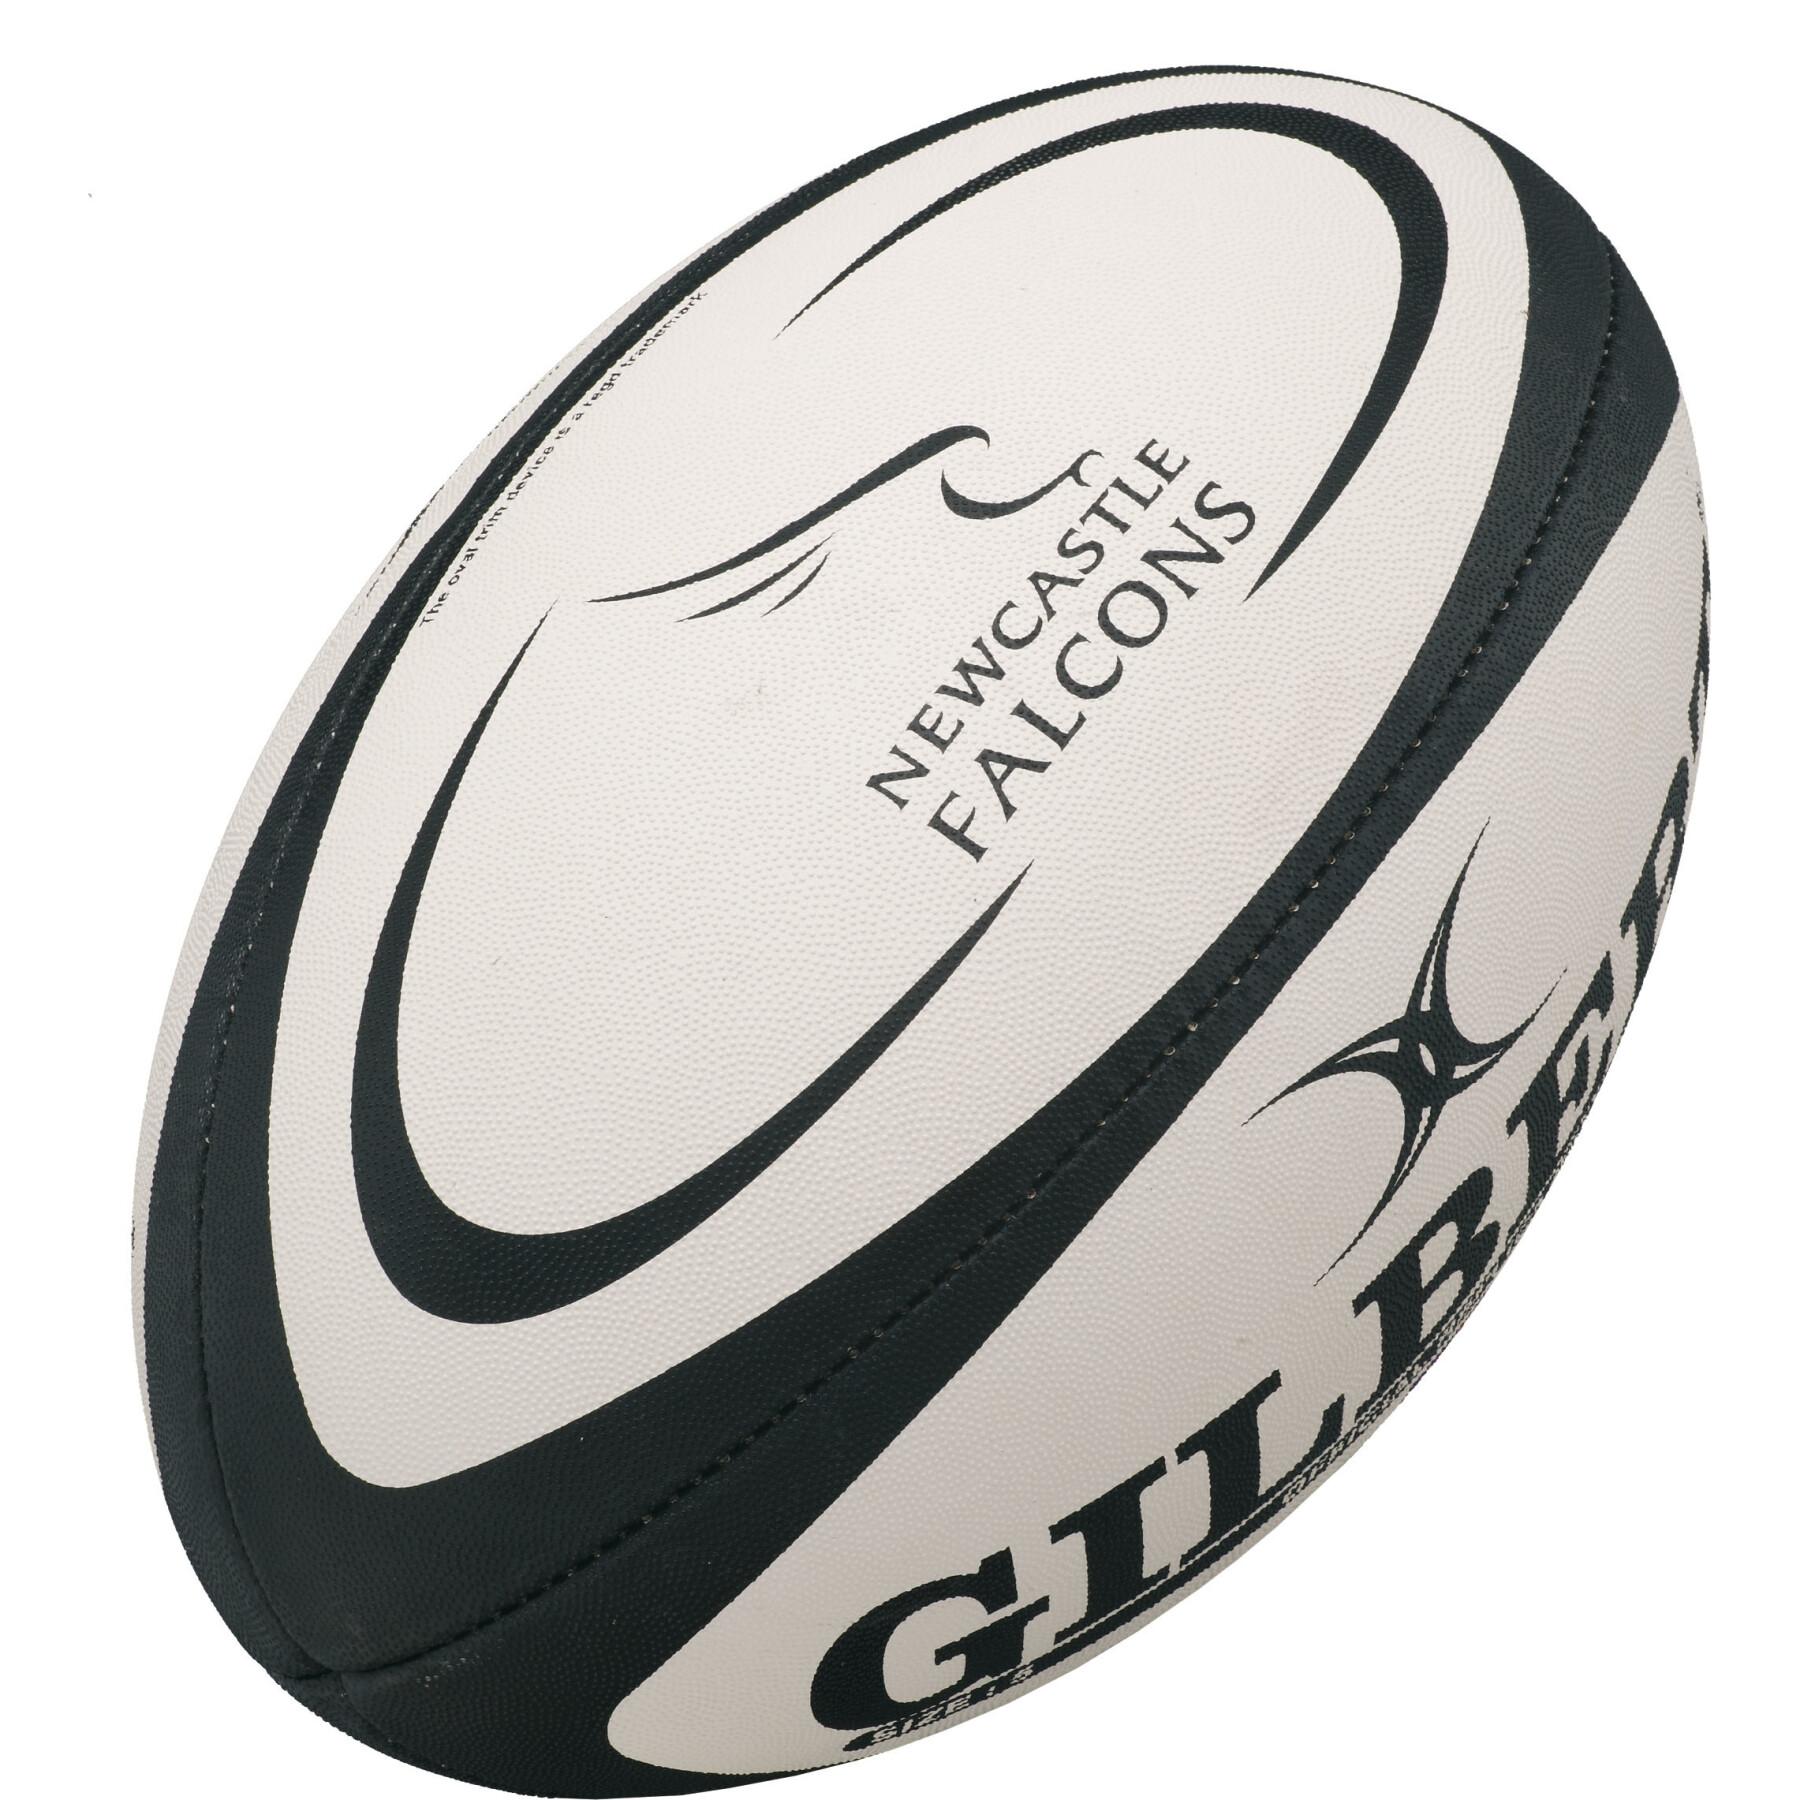 Ballon de rugby midi Gilbert Newcastle Falcons (taille 2)